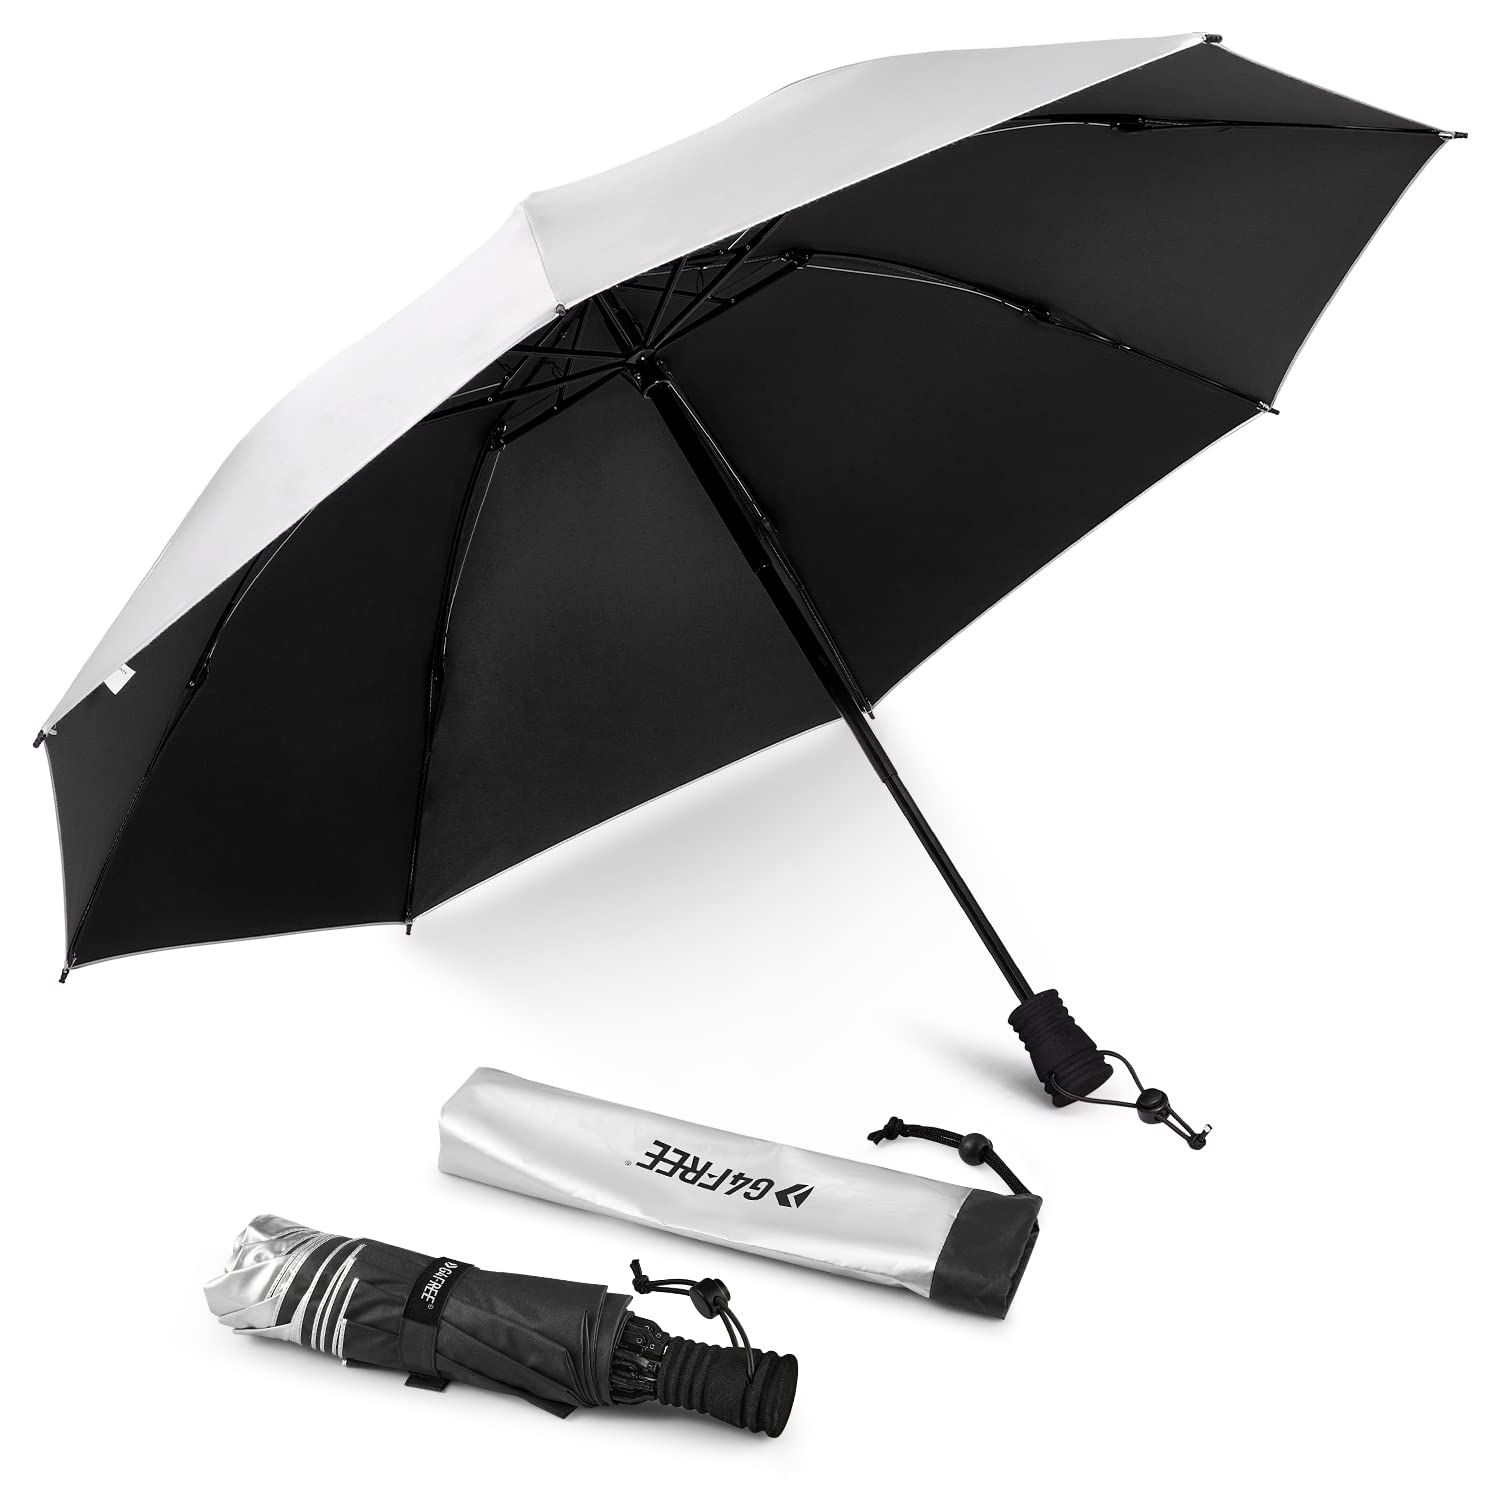  G4Free Liteflex Hiking Umbrella Small Mini Ultralight